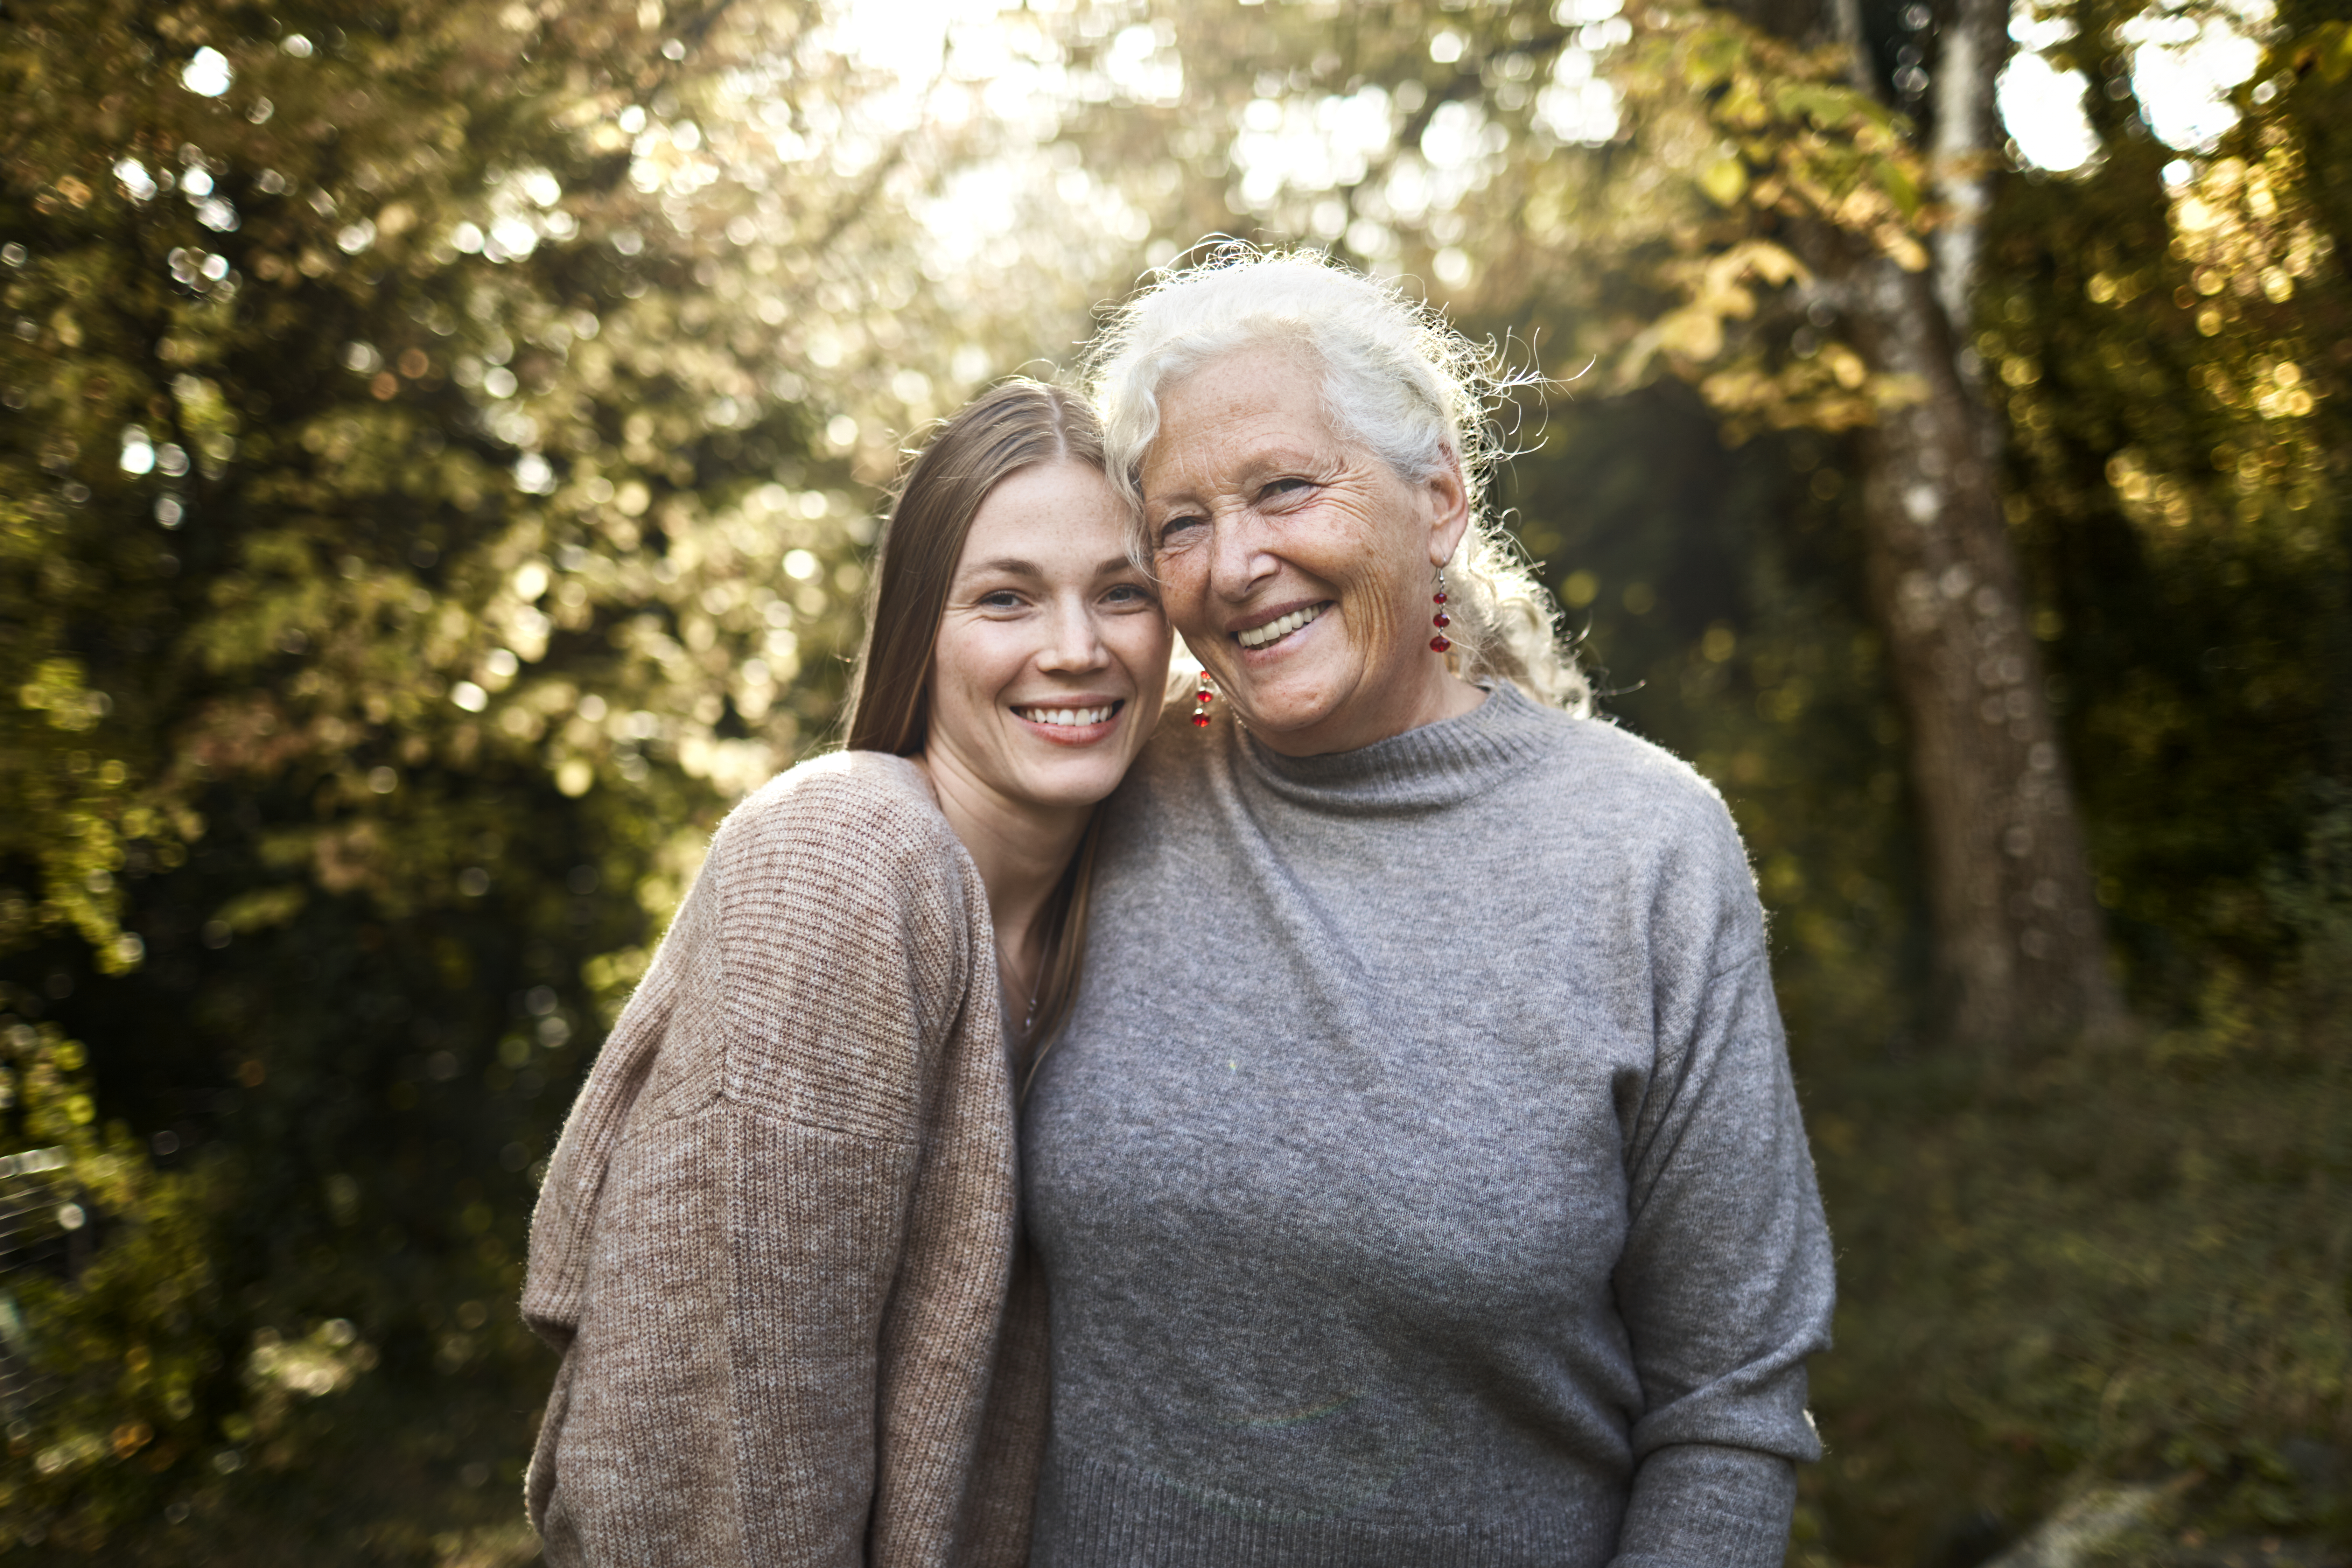 Porträt einer glücklichen Großmutter und einer erwachsenen Enkelin im Garten | Quelle: Getty Images